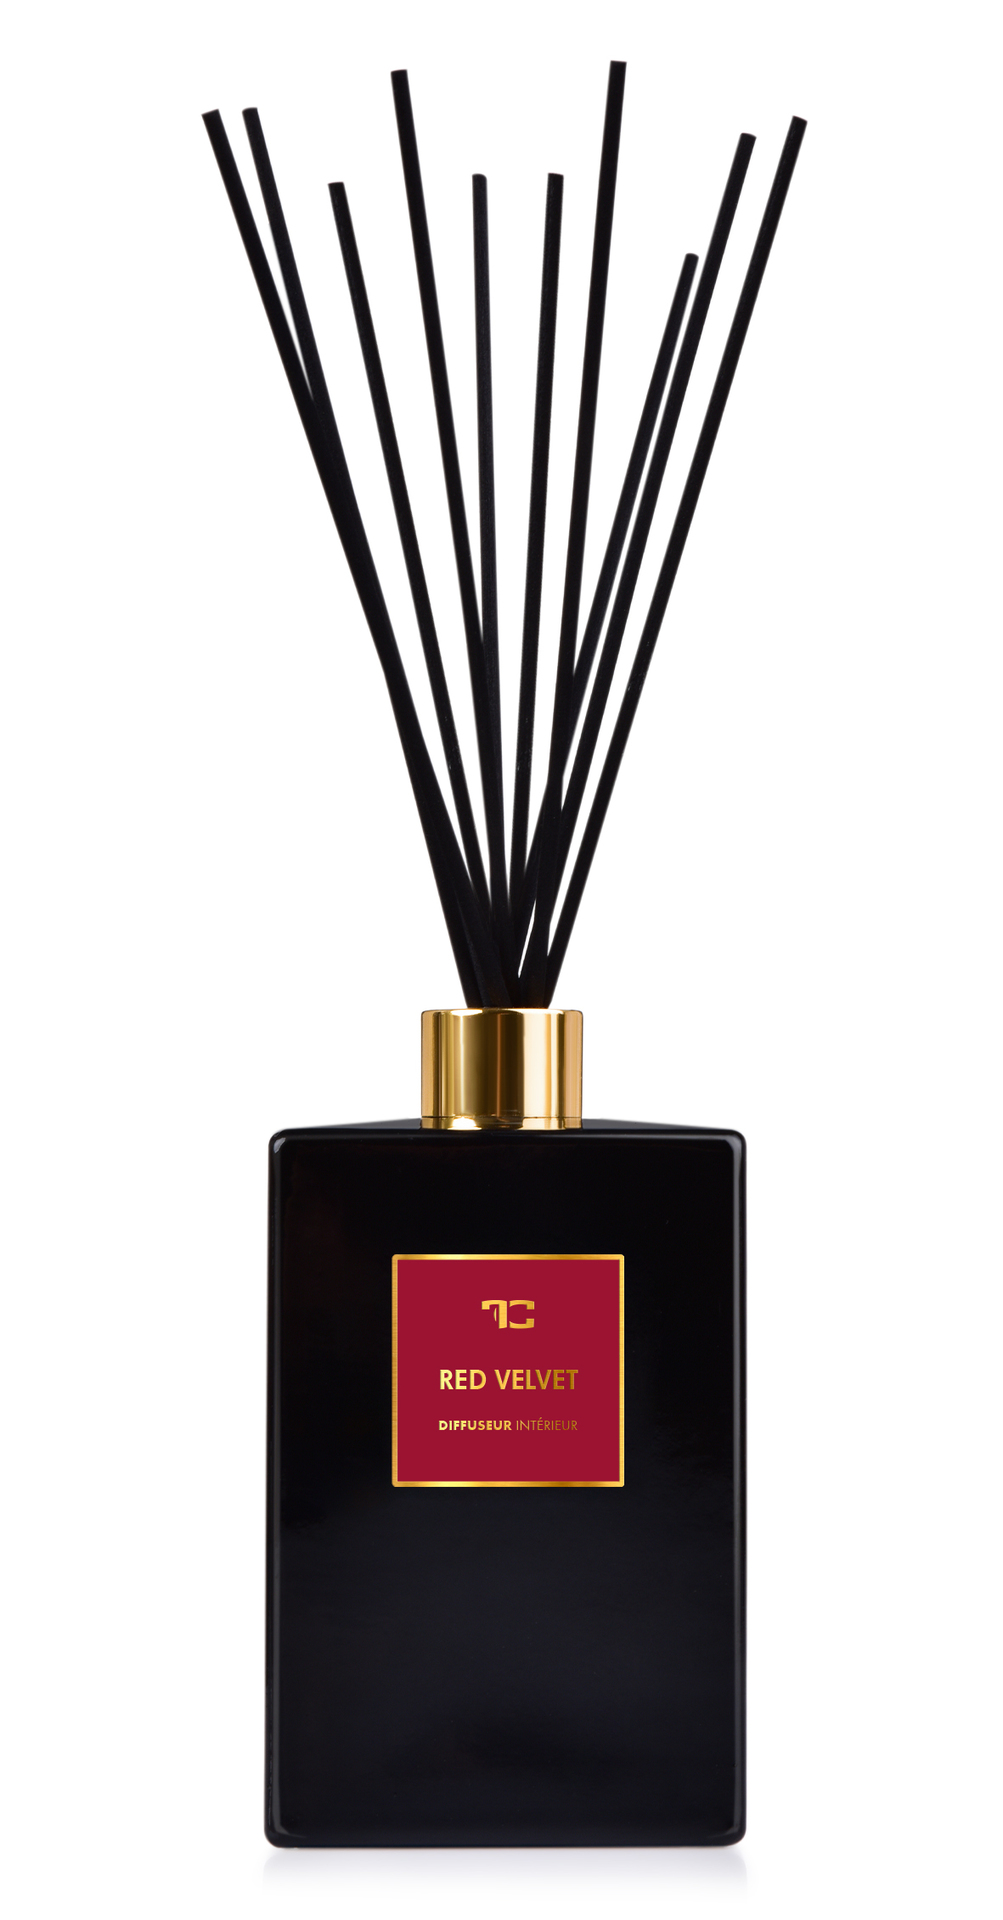 Interiérový tyčinkový bytový parfém RED VELVET DIFFUSEUR INTÉRIEUR